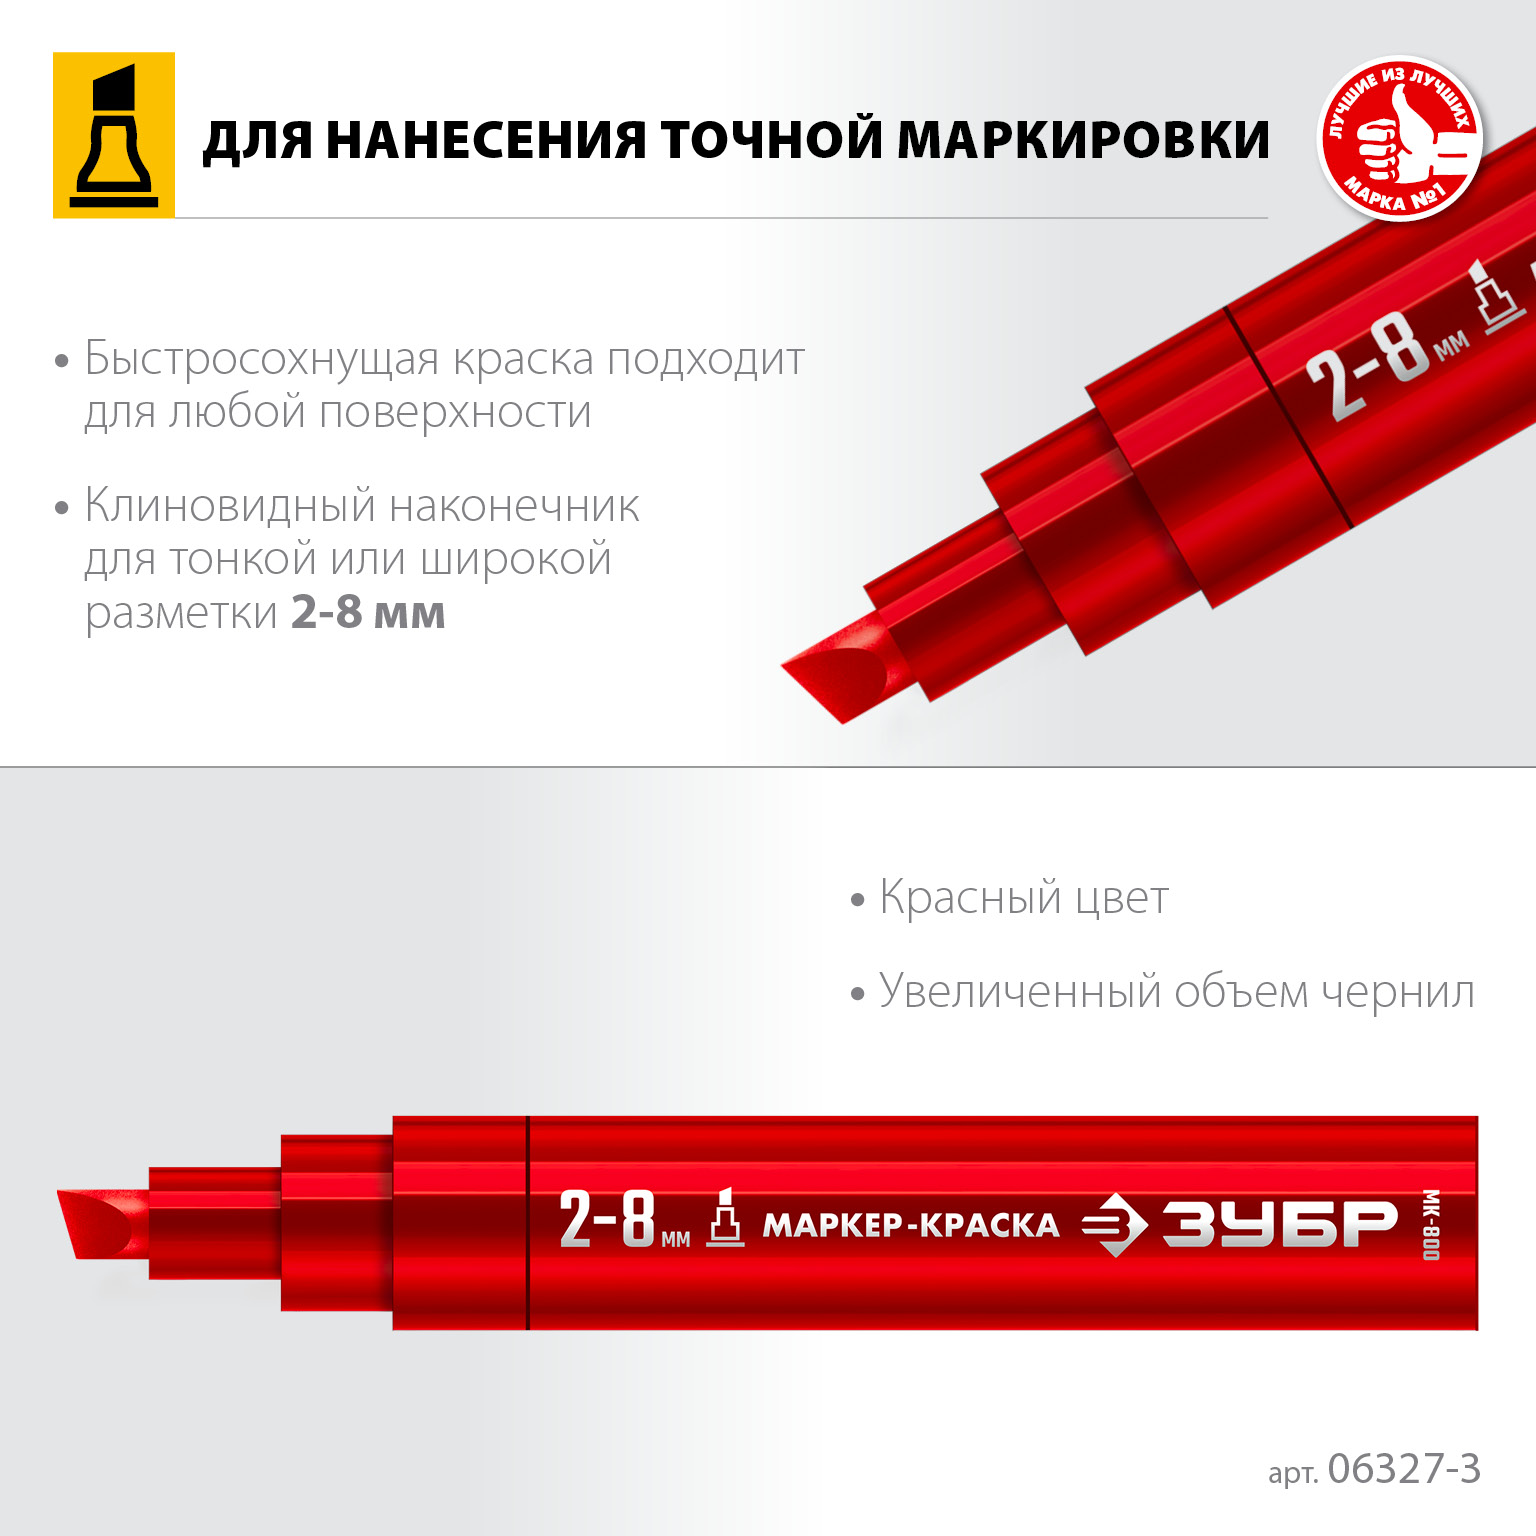 ЗУБР МК-800 2-8 мм, клиновидный, красный, экстрабольшой объем, Маркер-краска, ПРОФЕССИОНАЛ (06327-3)